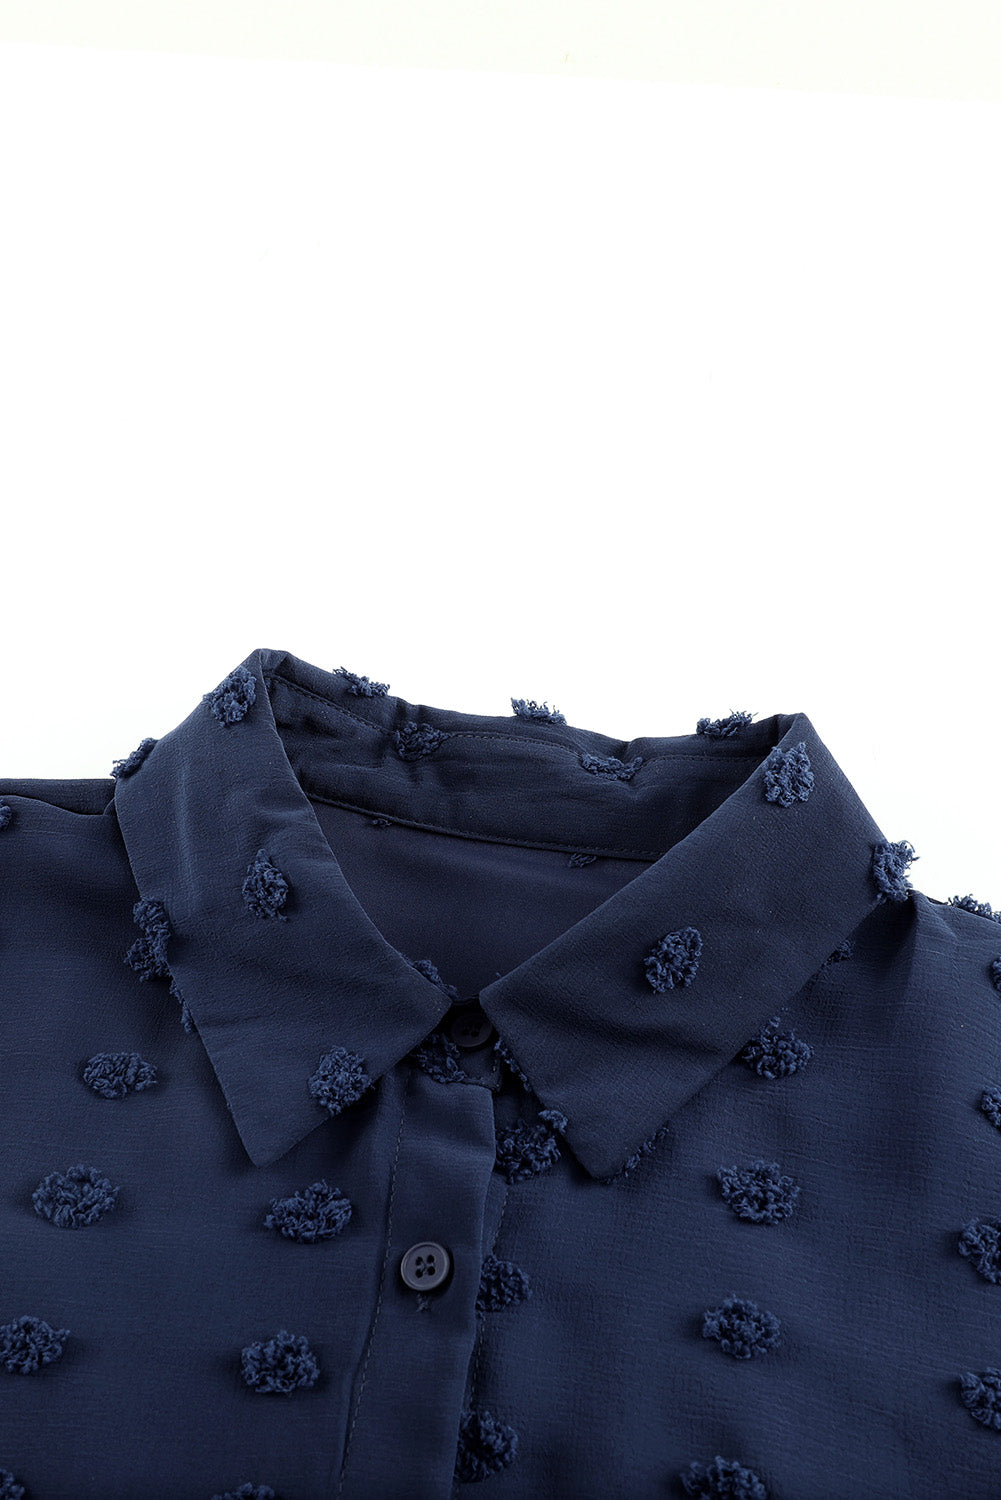 Swiss Dot Button-Up Long Sleeve Shirt